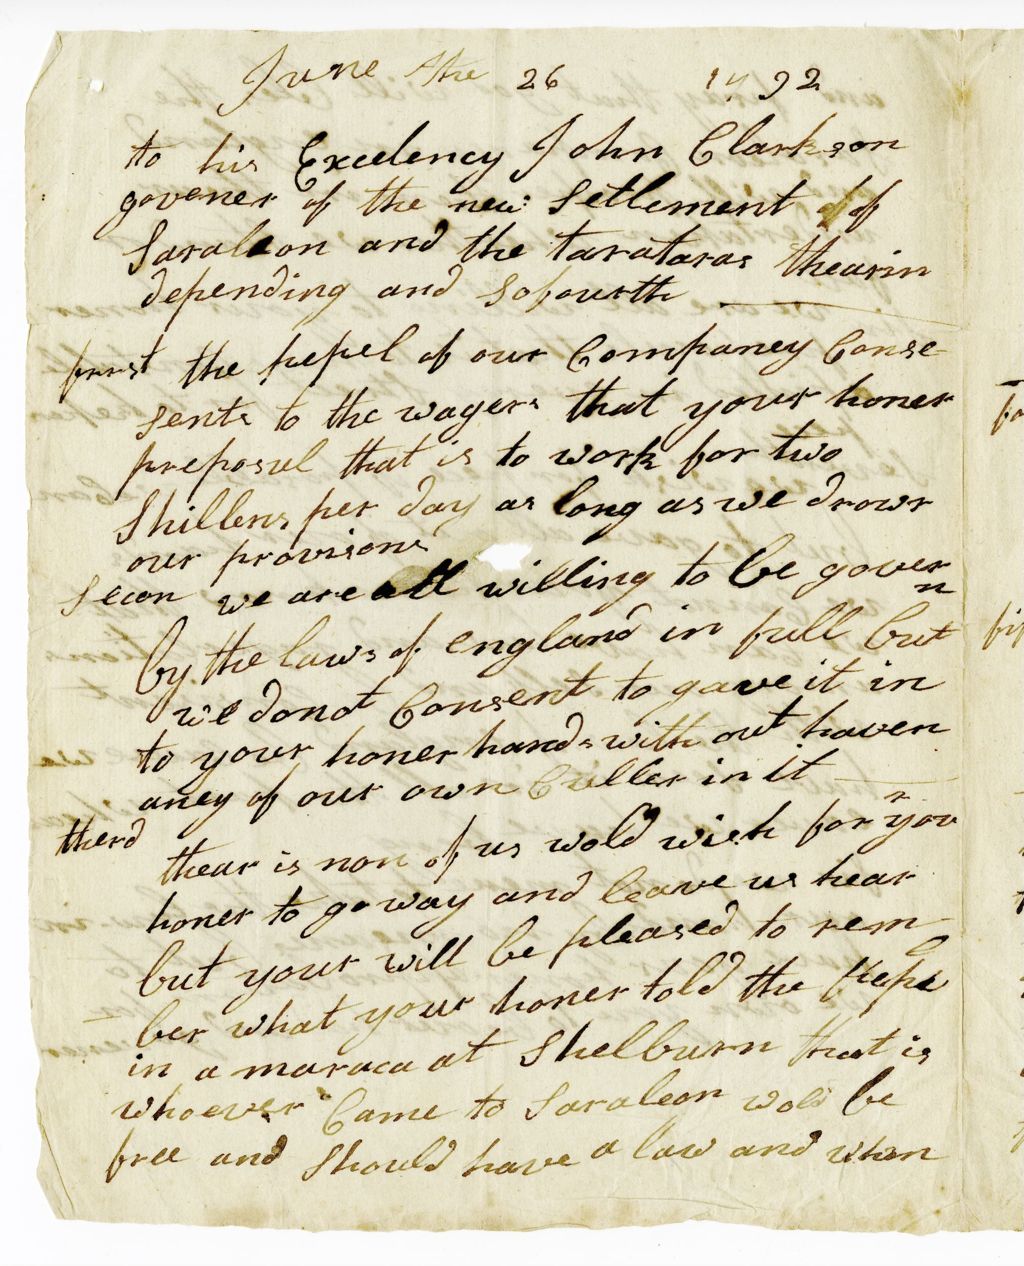 Letter to John Clarkson, June 26, 1792